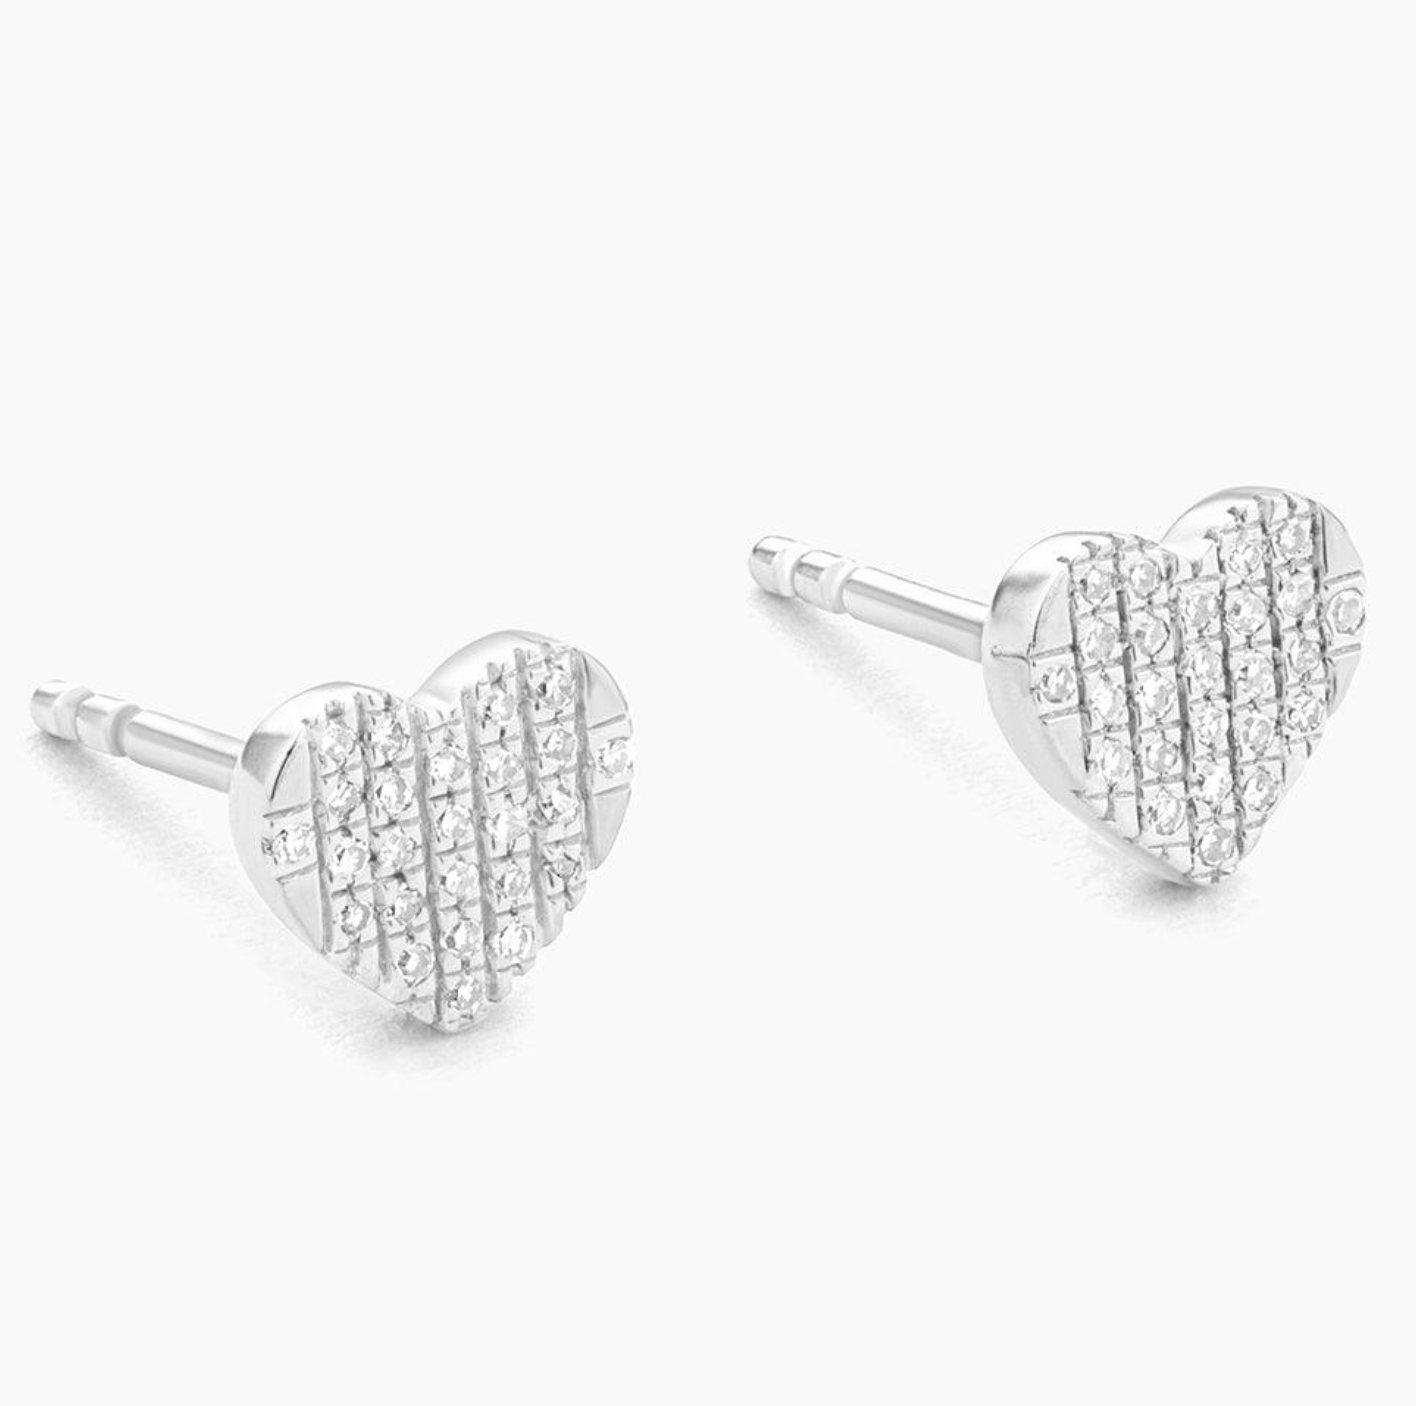 All Heart Stud Earrings in Silver